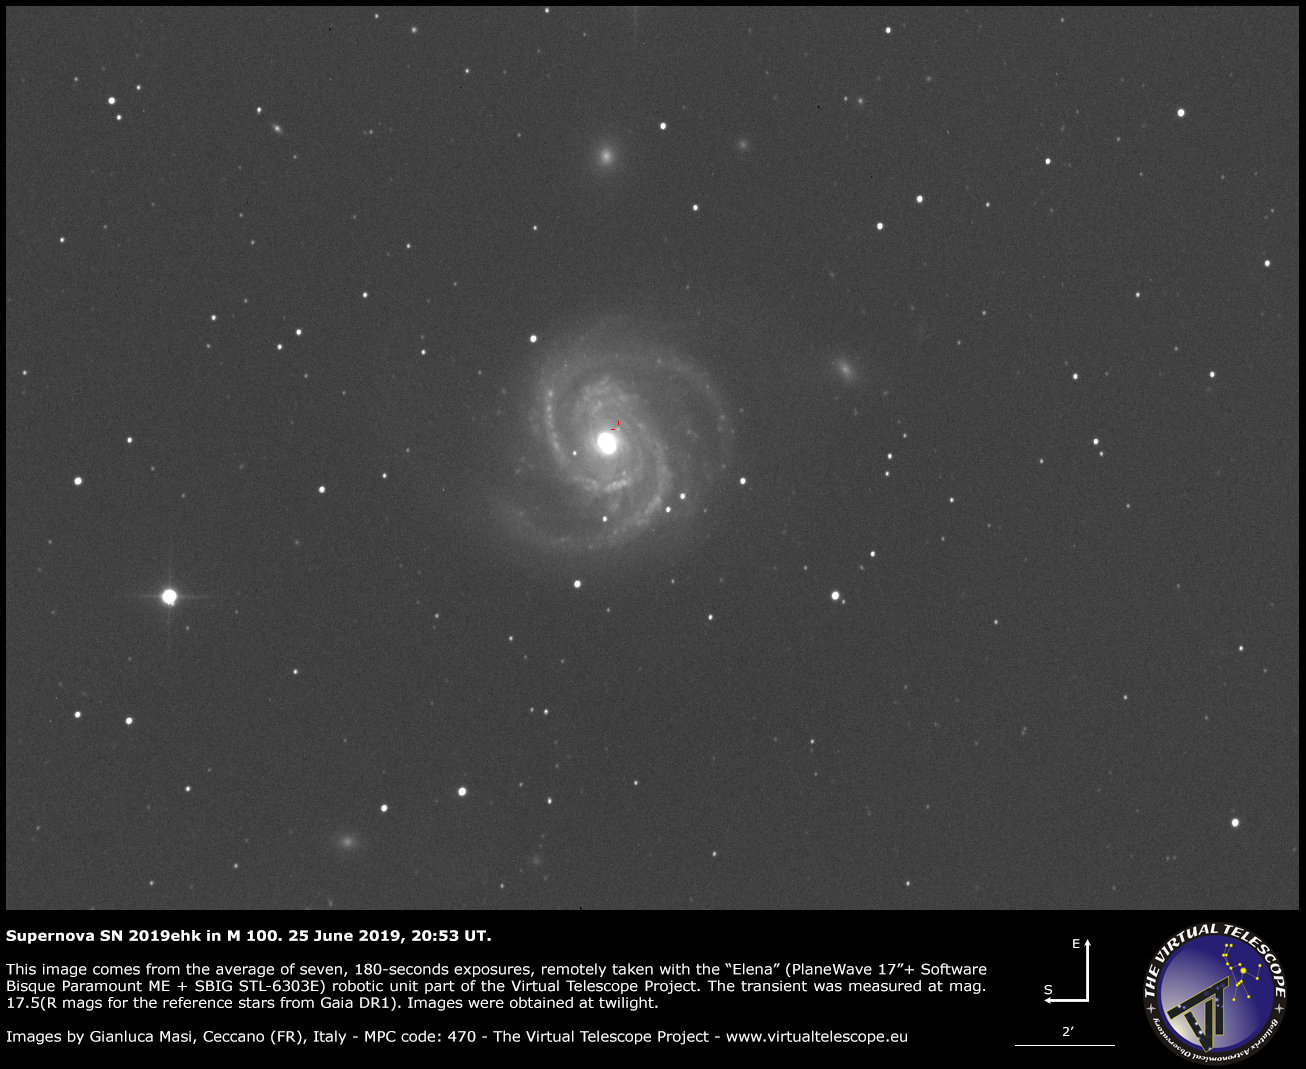 Supernova SN 2019ehk in Messier 100: 25 June 2019